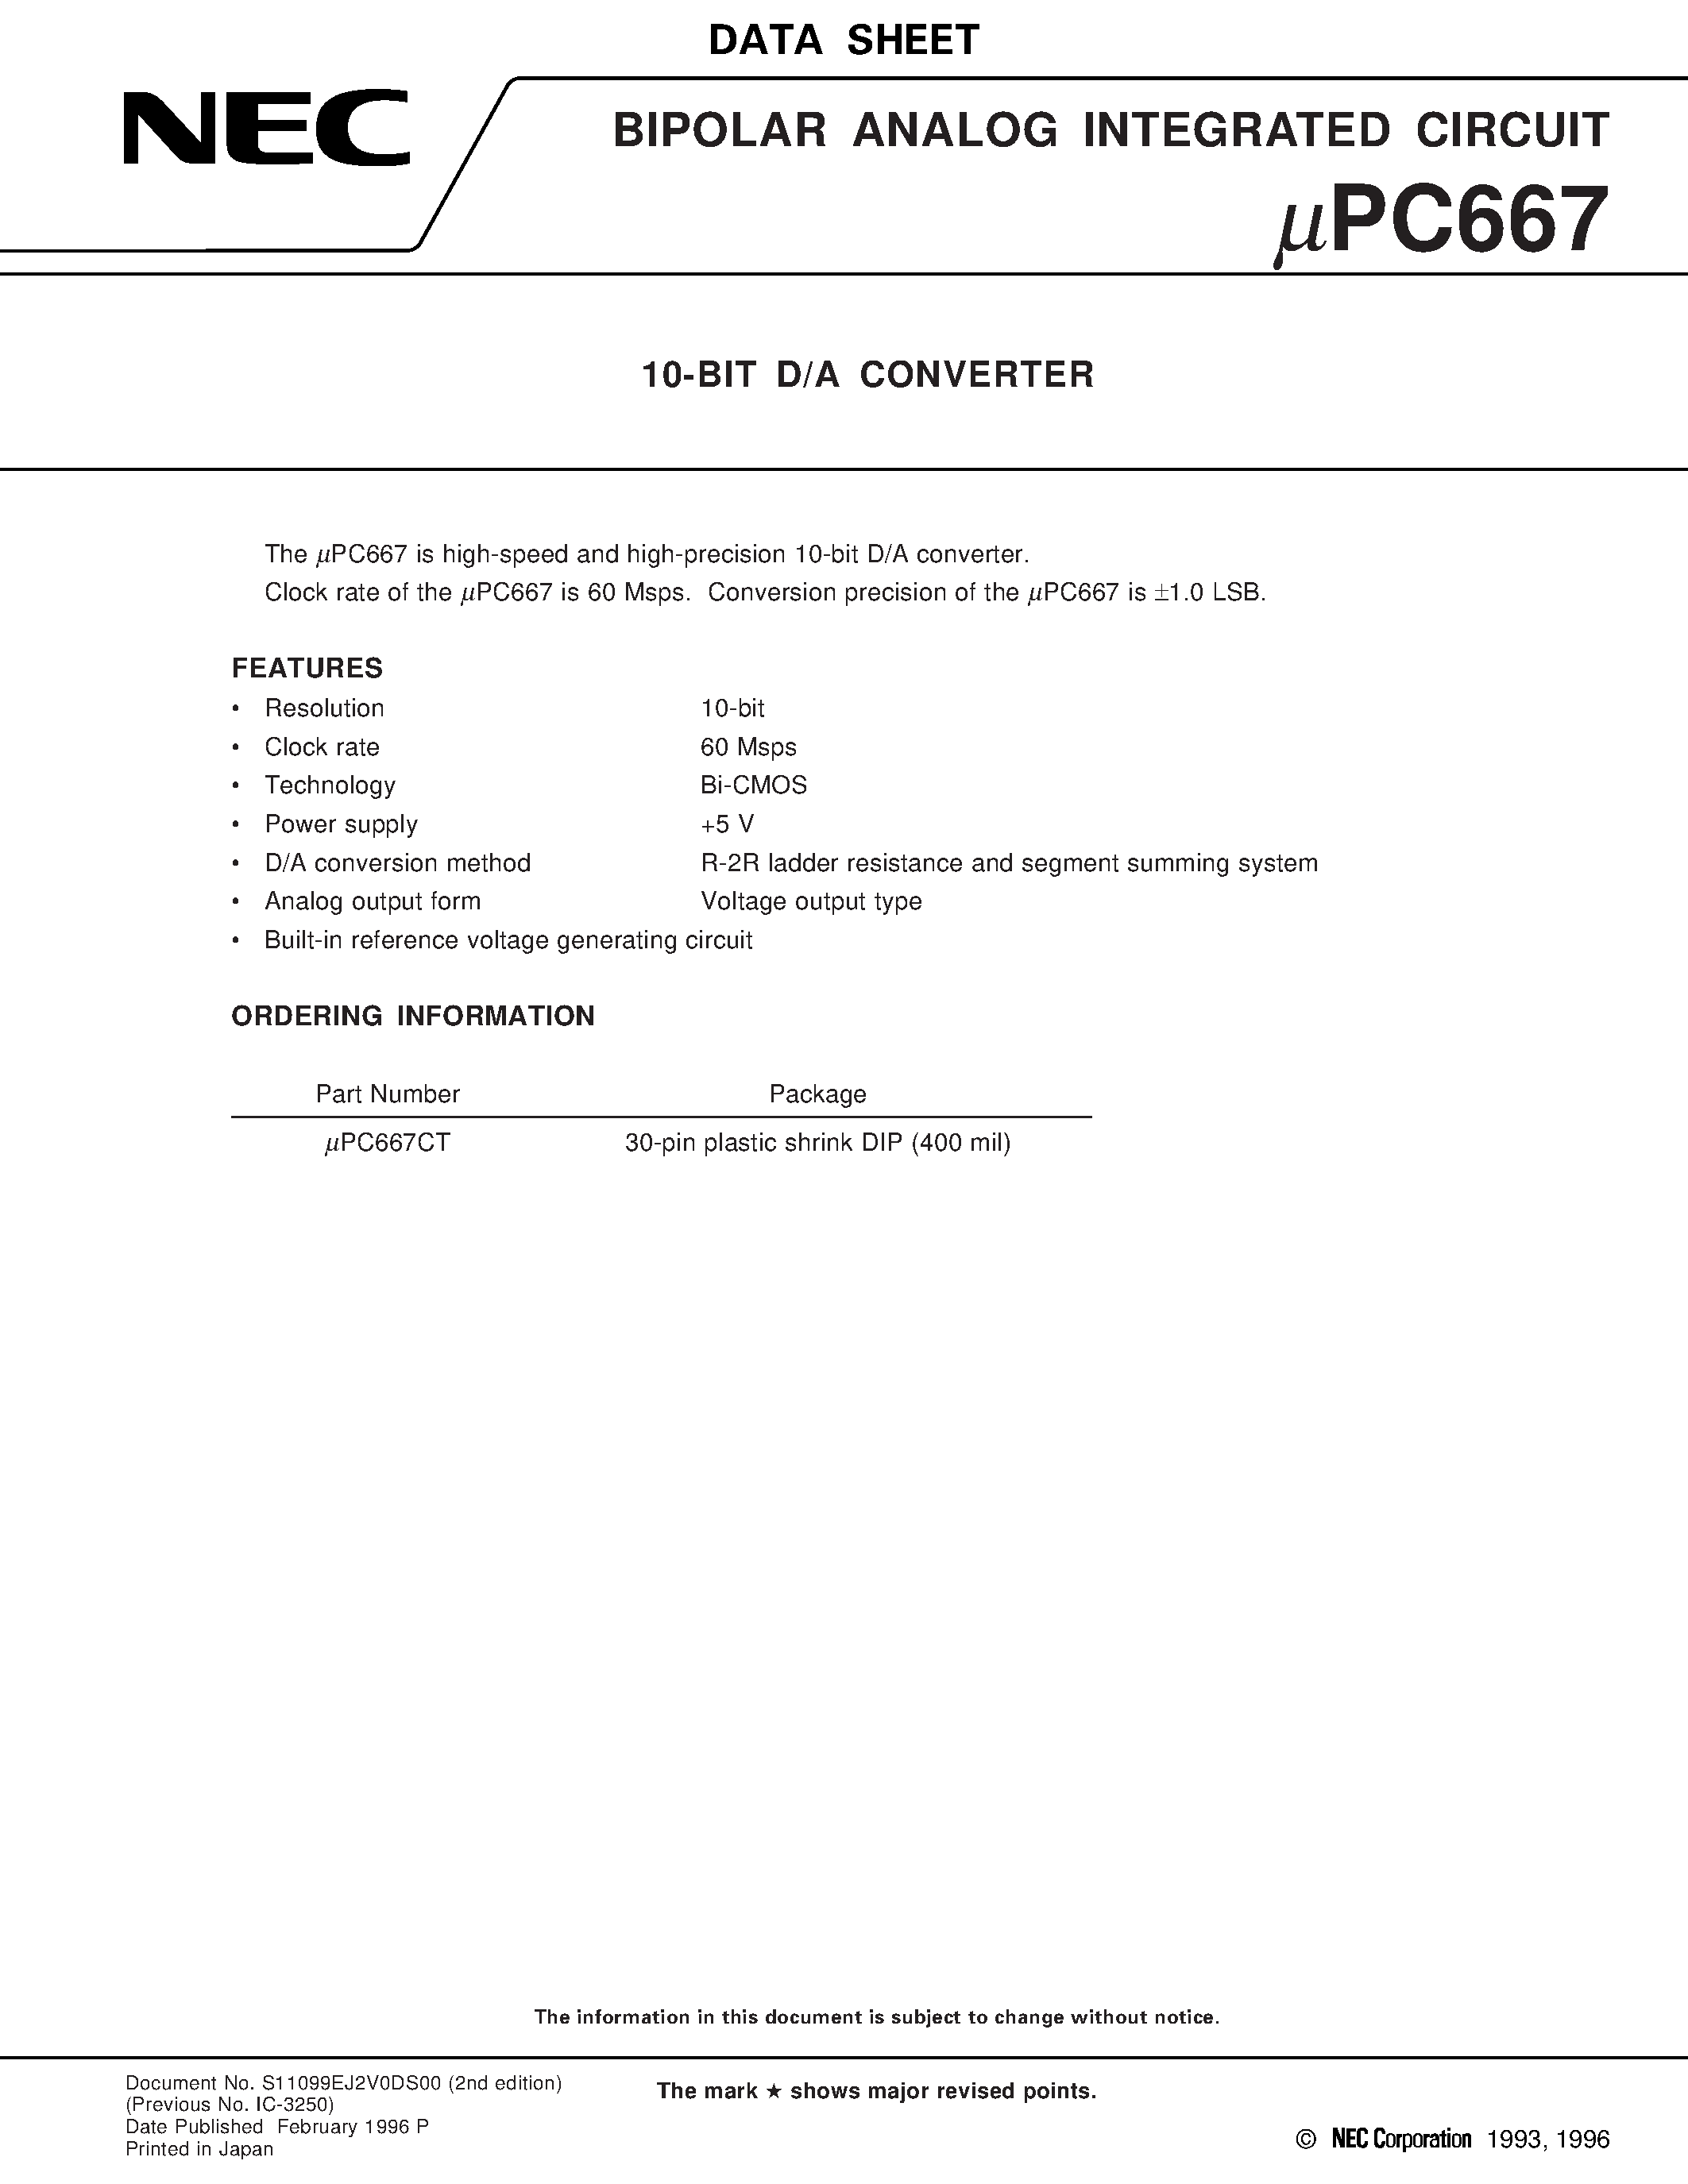 Datasheet UPC667 - 10-BIT D/A CONVERTER page 1